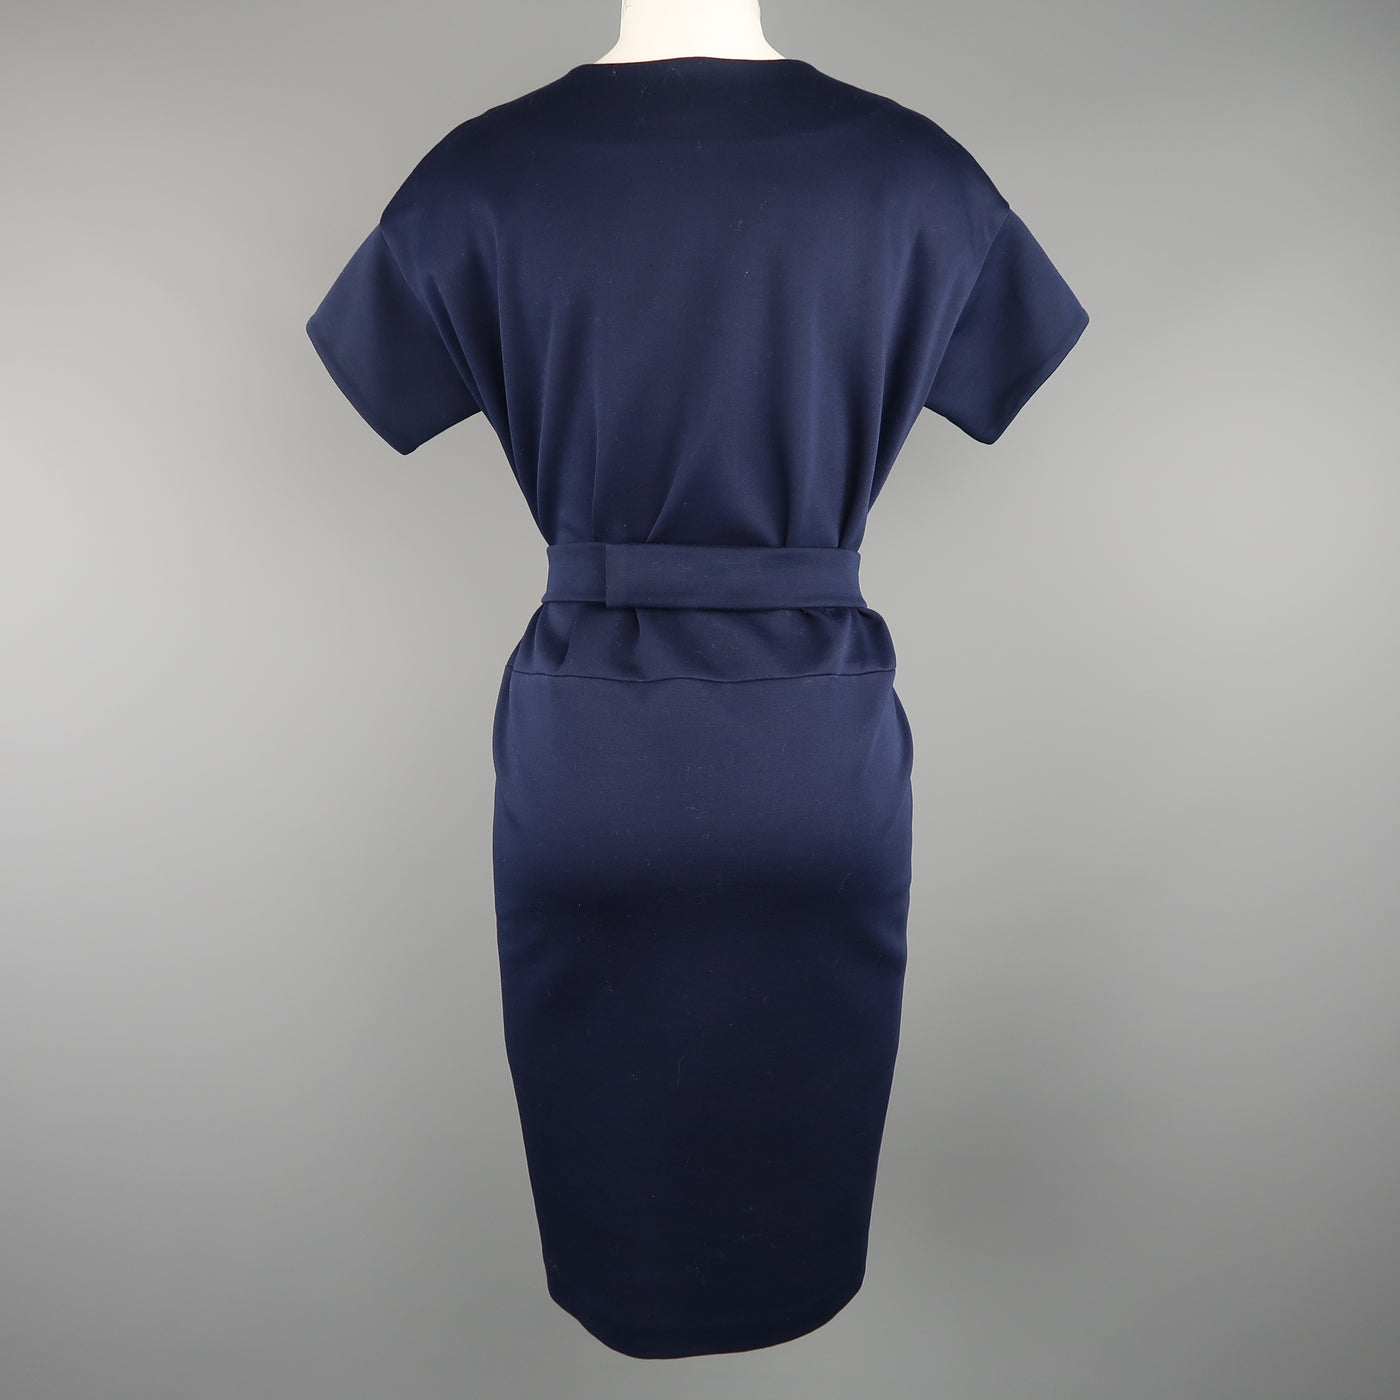 JIL SANDER Size M Navy Cotton / Polyester Jersey Short Sleeve Belted Shift Dress